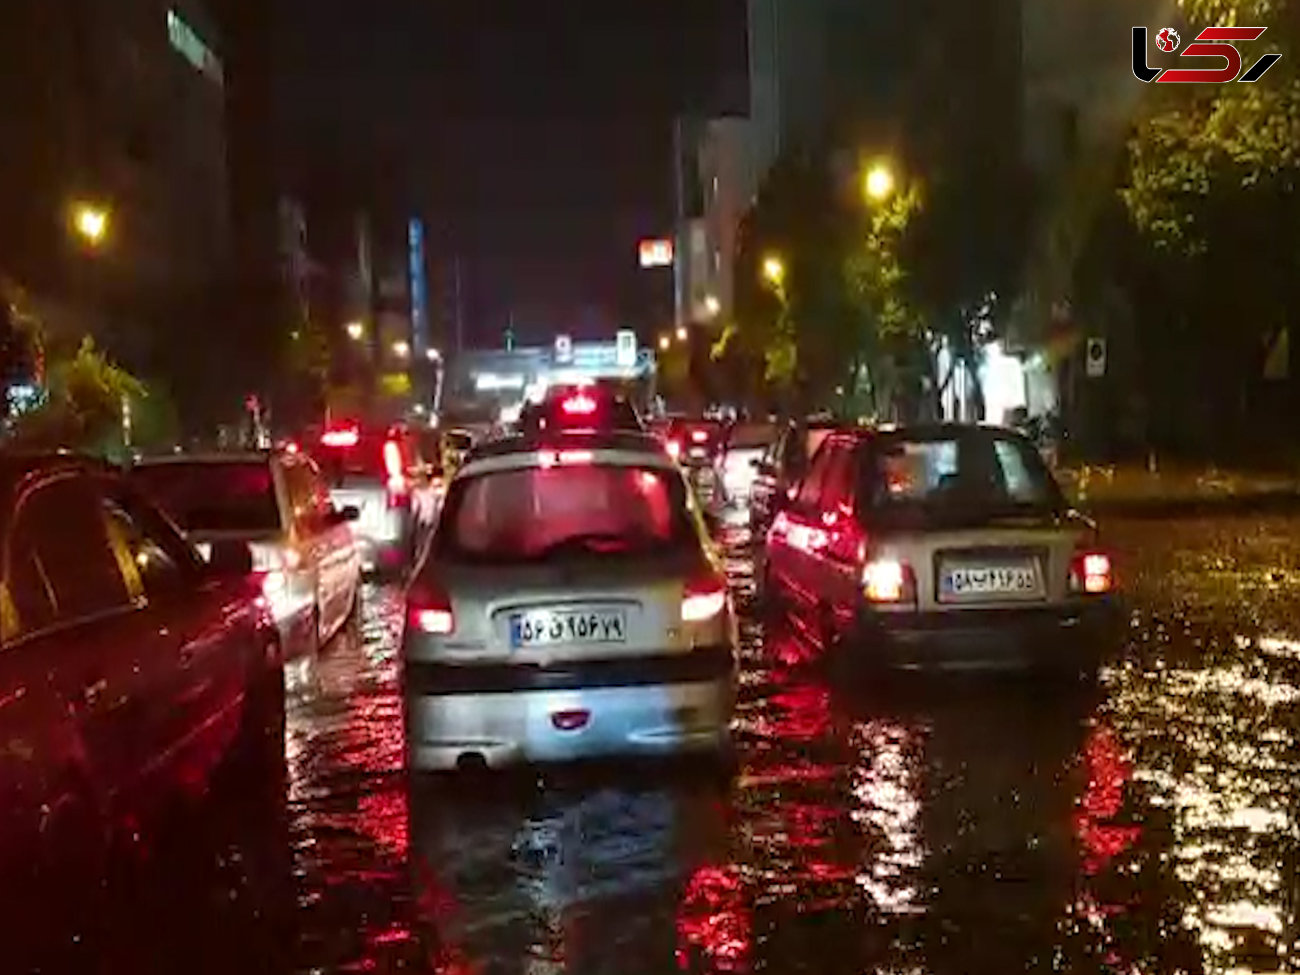 باران تهرانی ها را غافلگیر کرد / آب گرفتگی در خیابان های تهران +عکس و فیلم